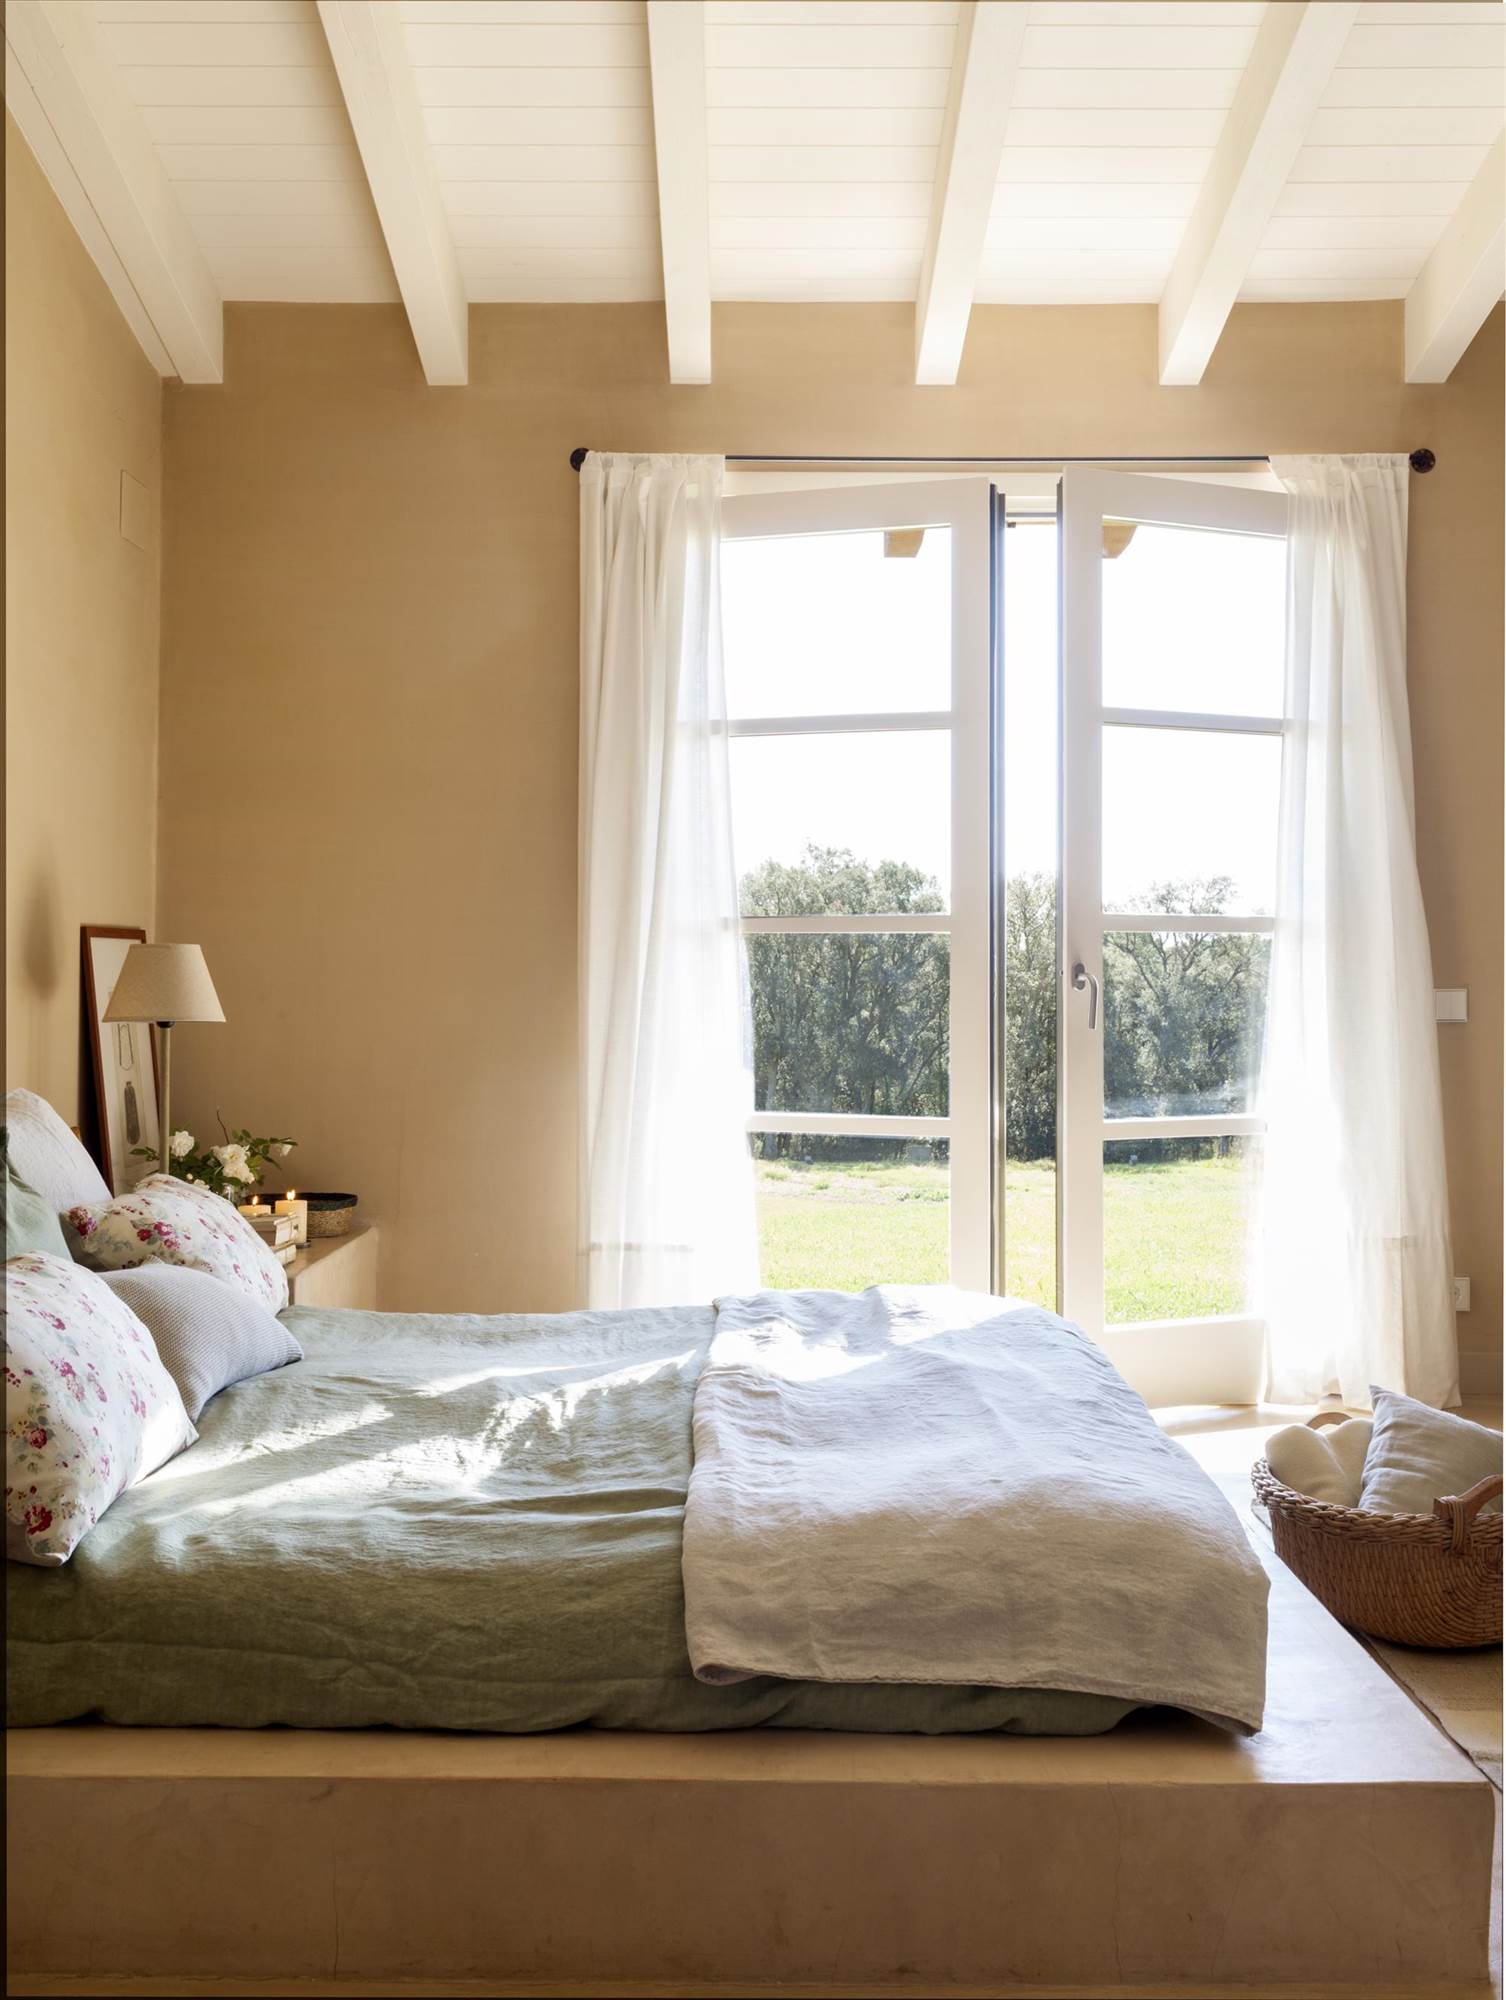 Dormitorio decorado con cortinas blancas